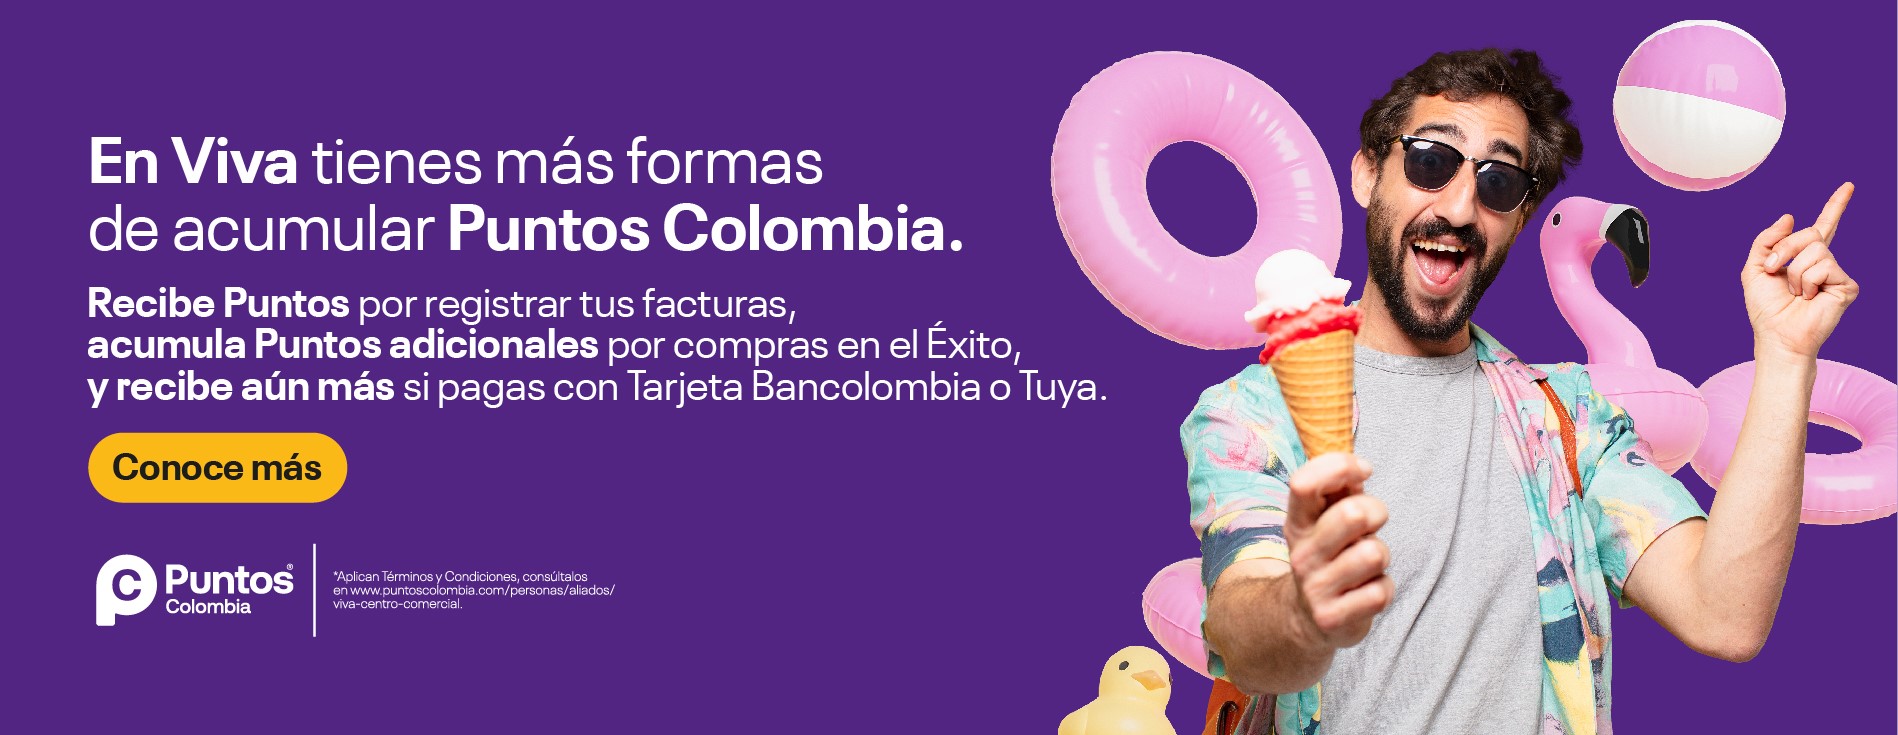 Acumula Puntos Colombia en centros comerciales viva